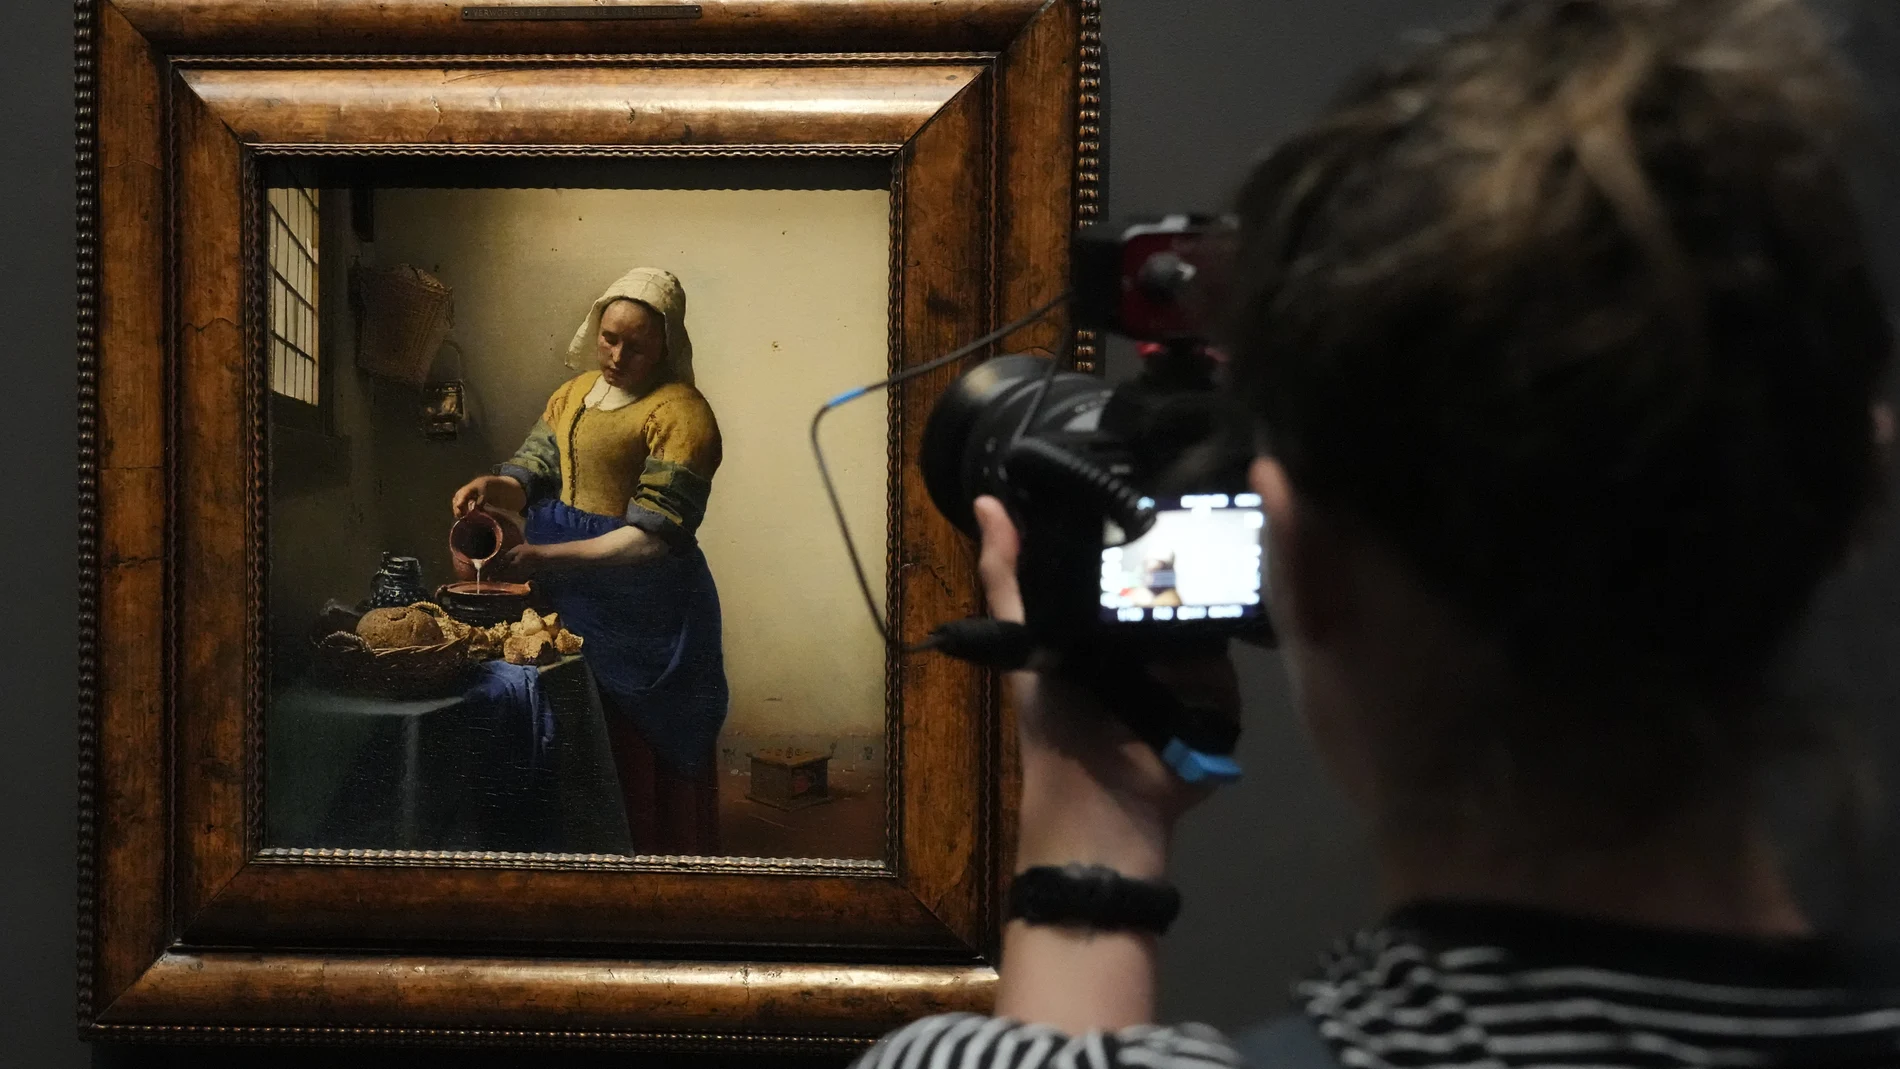 Hallan un boceto oculto tras “La lechera” de Vermeer